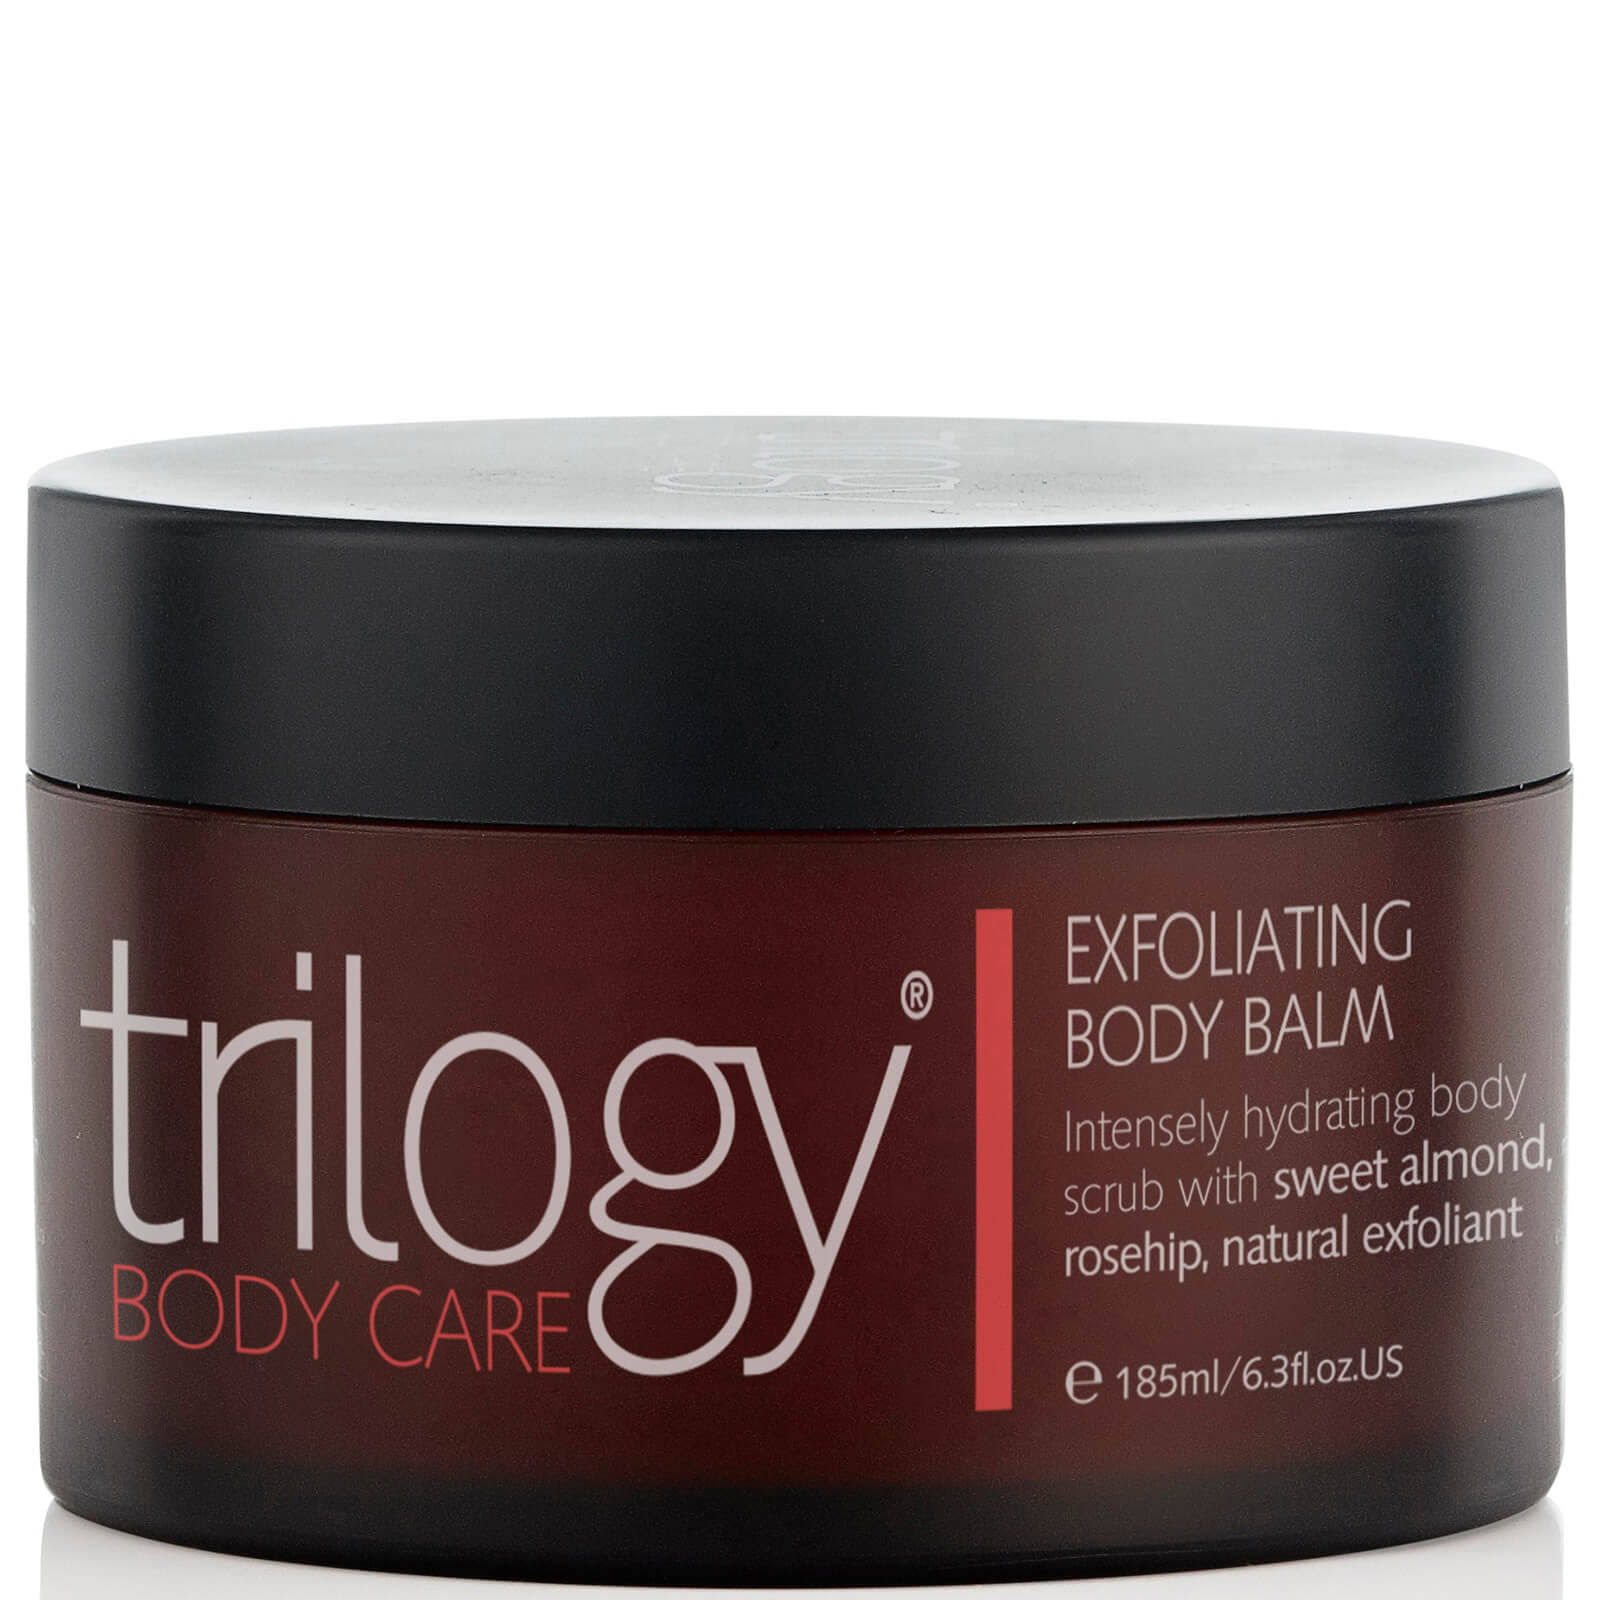 Trilogy Exfoliating Body Balm - 185ml